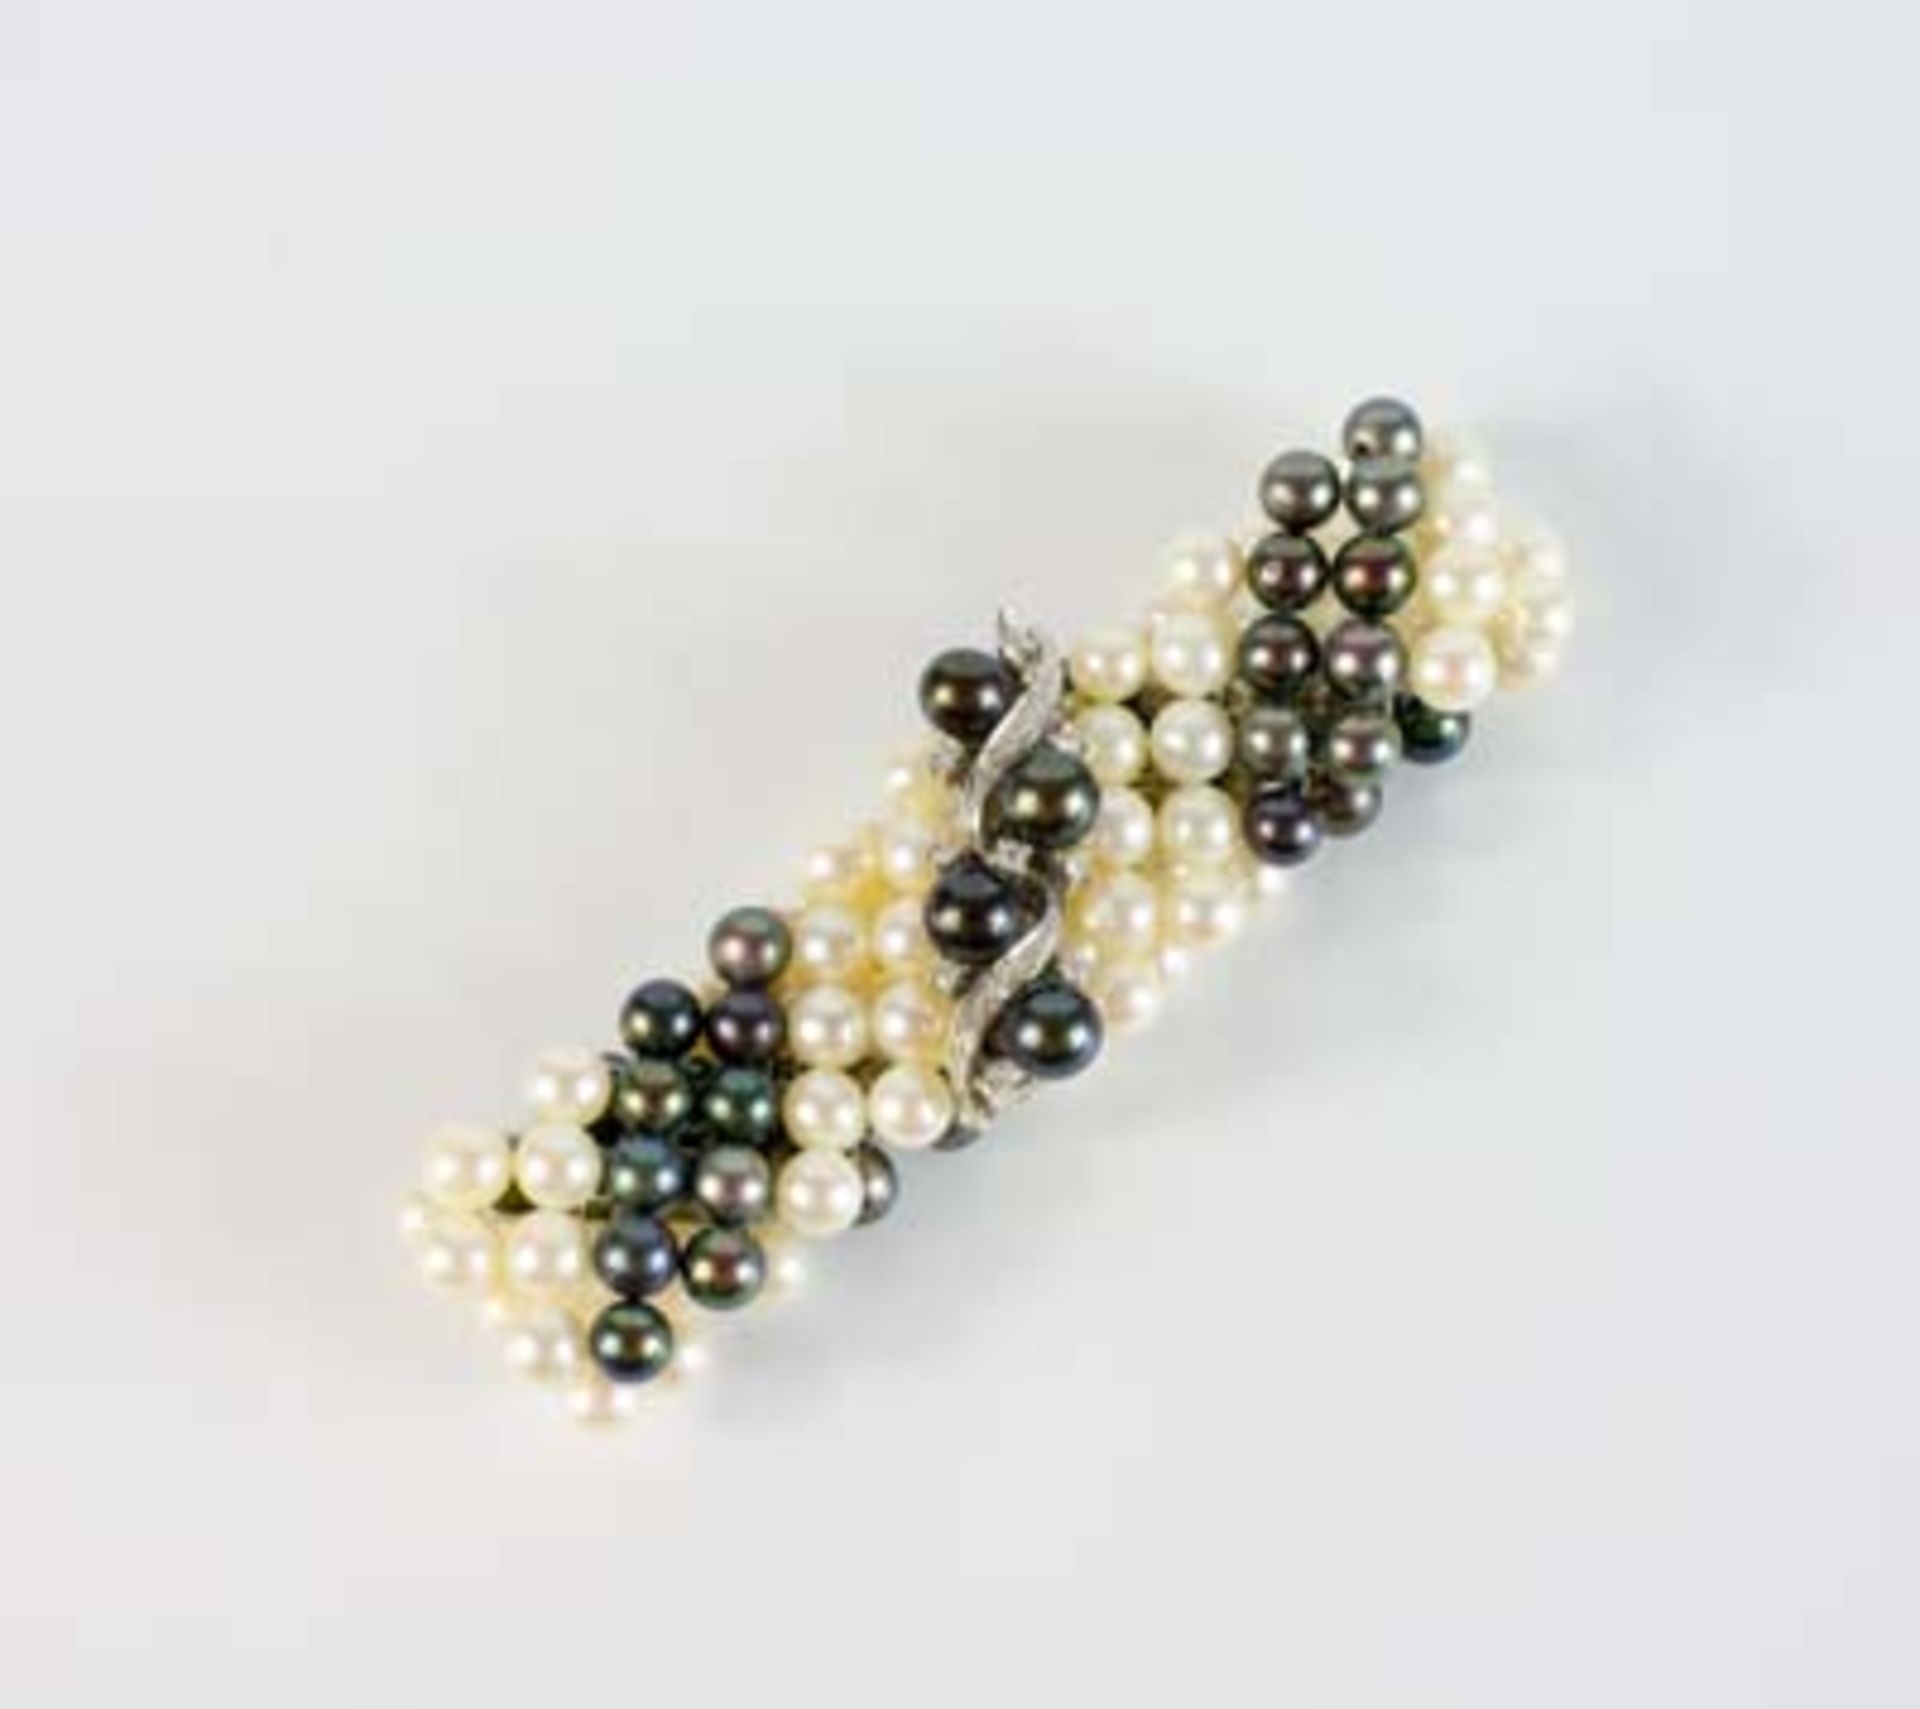 Perlenarmband Verschluss 585 Weißgold, besetzt mit 9 Brillanten, gesamt ca. 0,21 ct, Länge 20 cm,